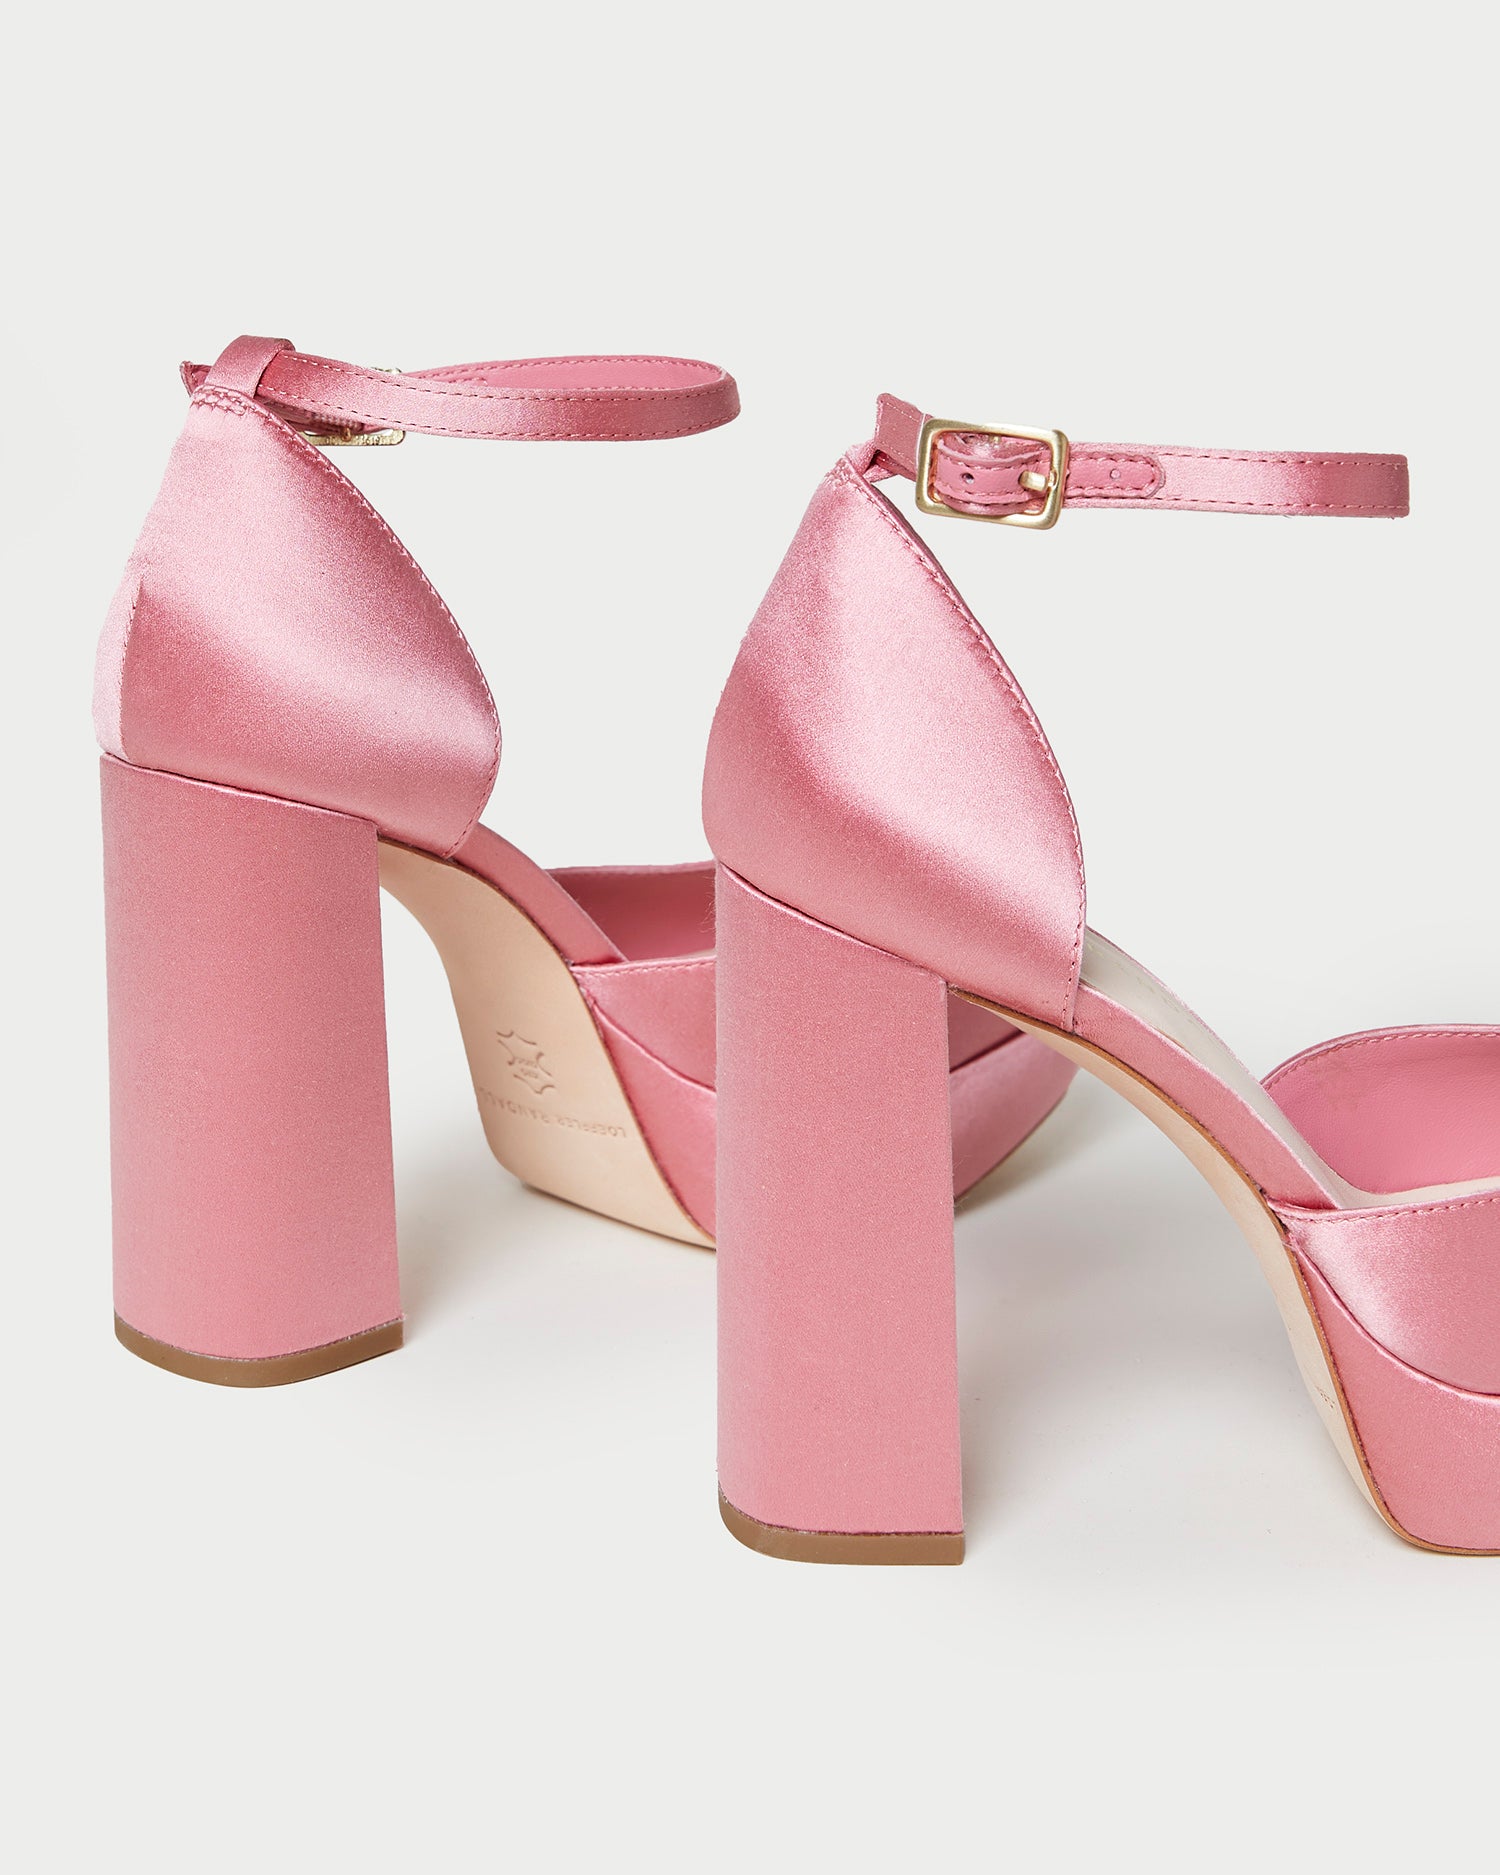 Pink Heels - Buy Pink Heels online in India